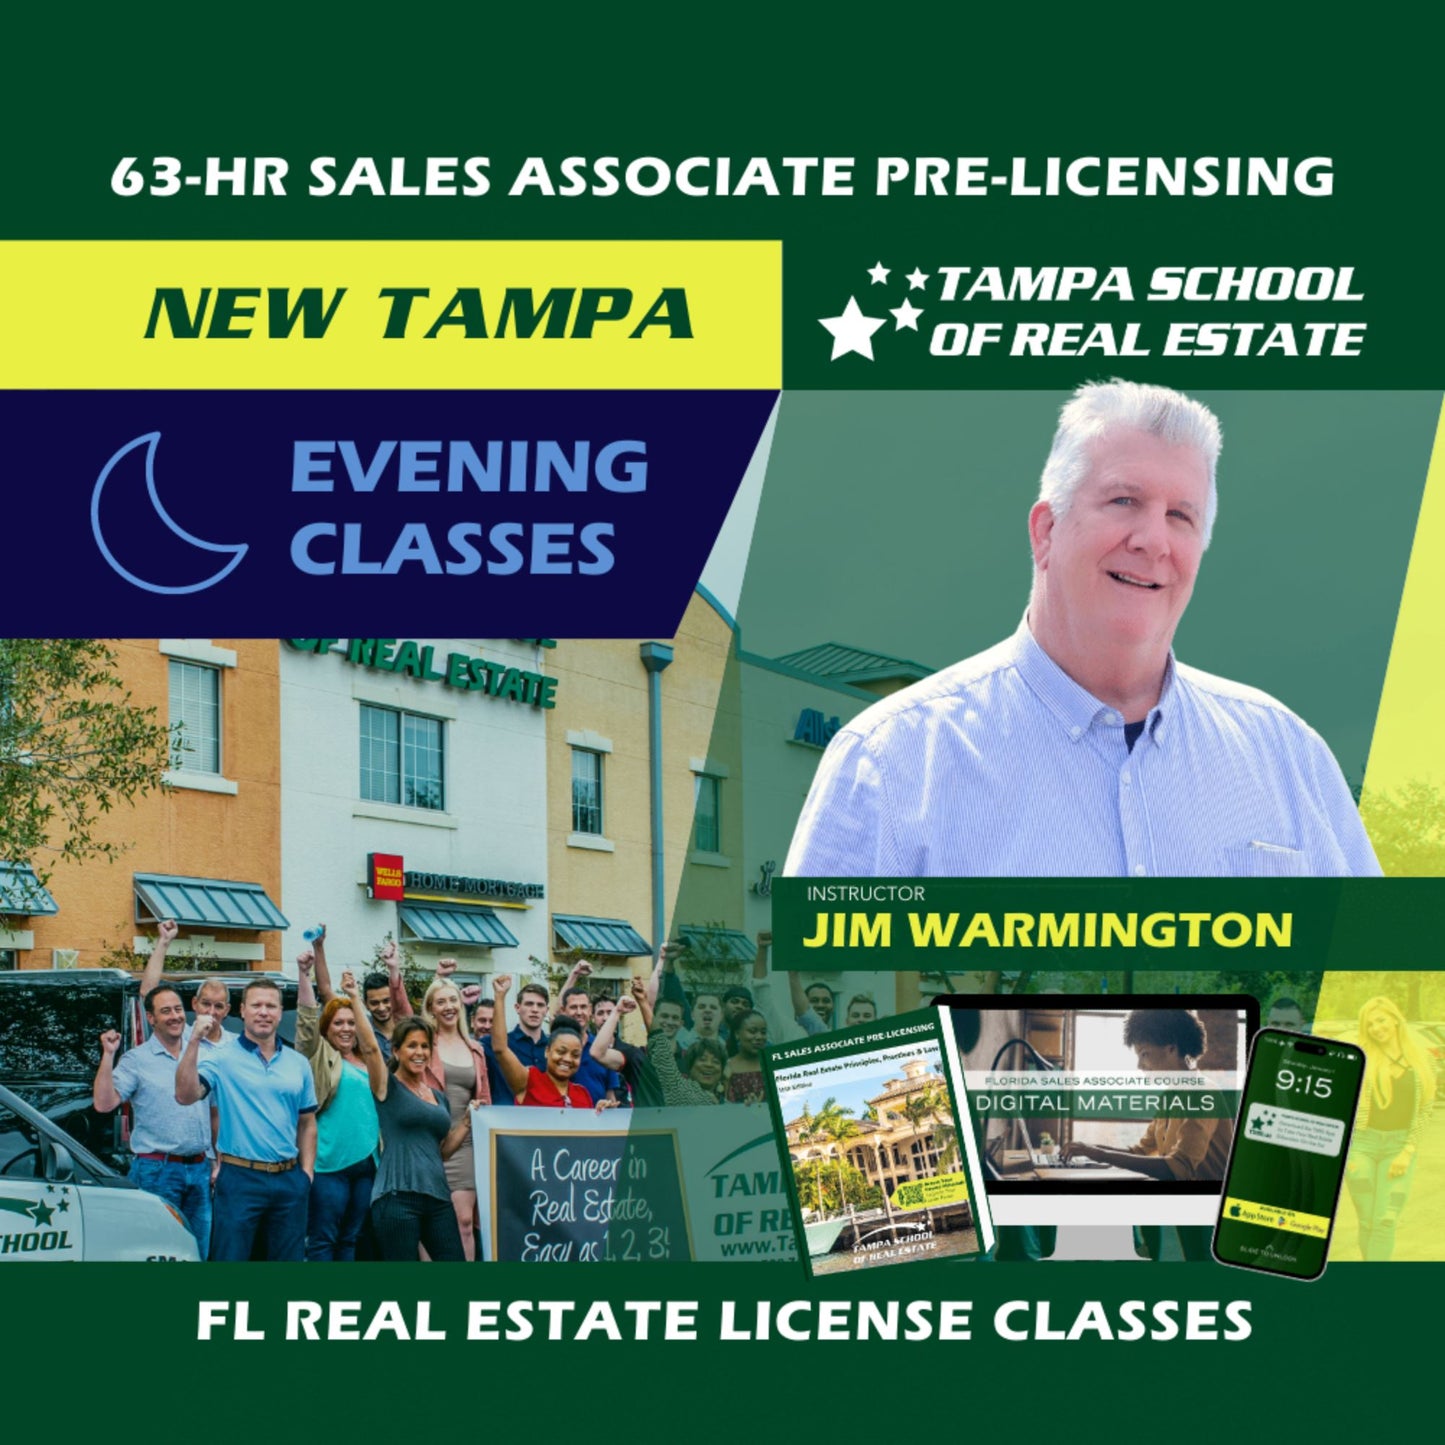 New Tampa | Jun 17 6:30pm | 63-HR FL Real Estate Classes SLPRE TSRE New Tampa | Tampa School of Real Estate 